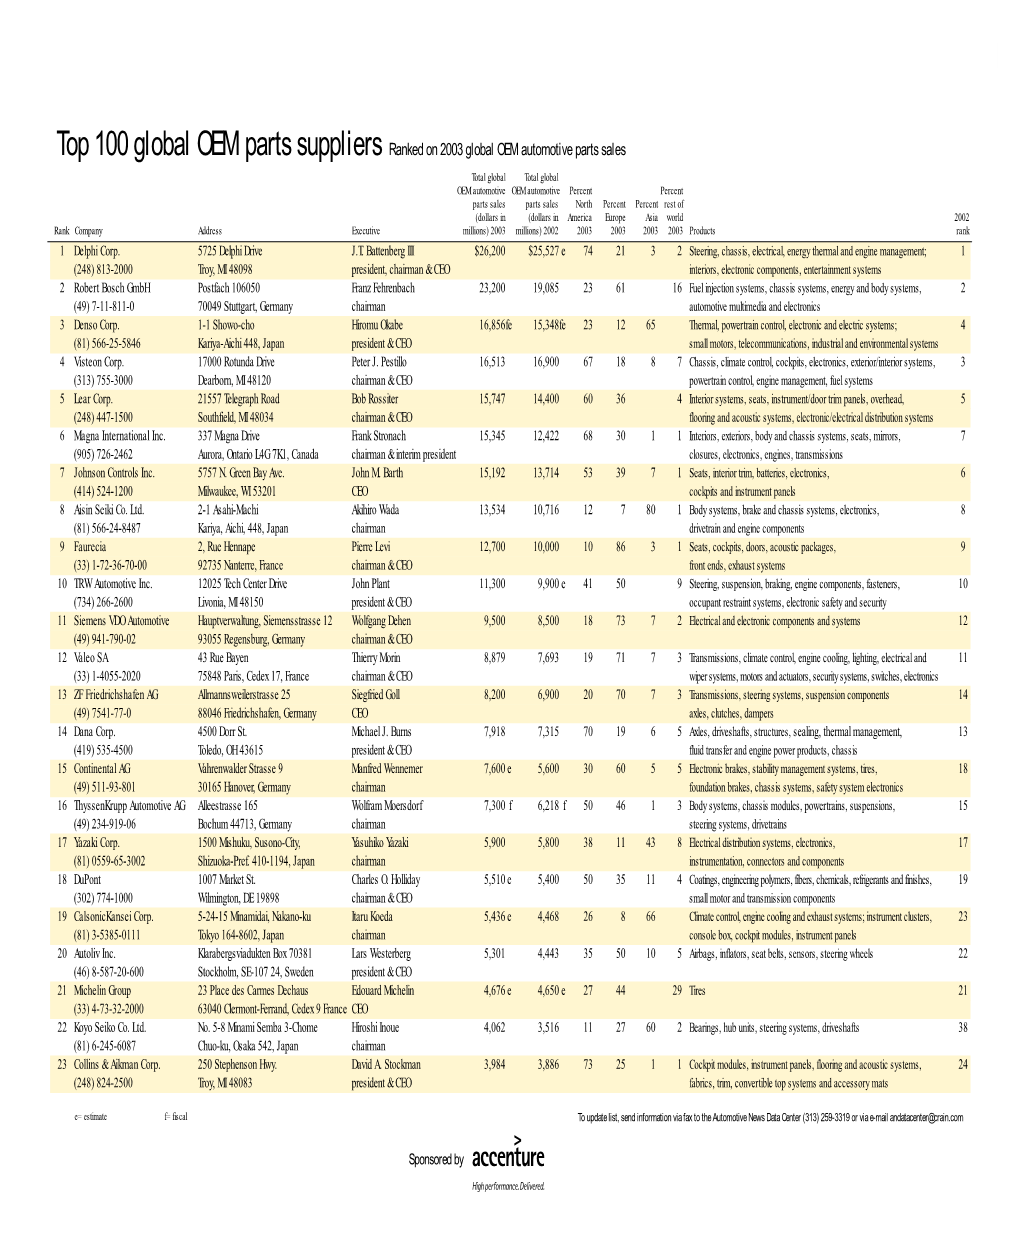 Top 100 Global OEM Parts Suppliers Ranked on 2003 Global OEM